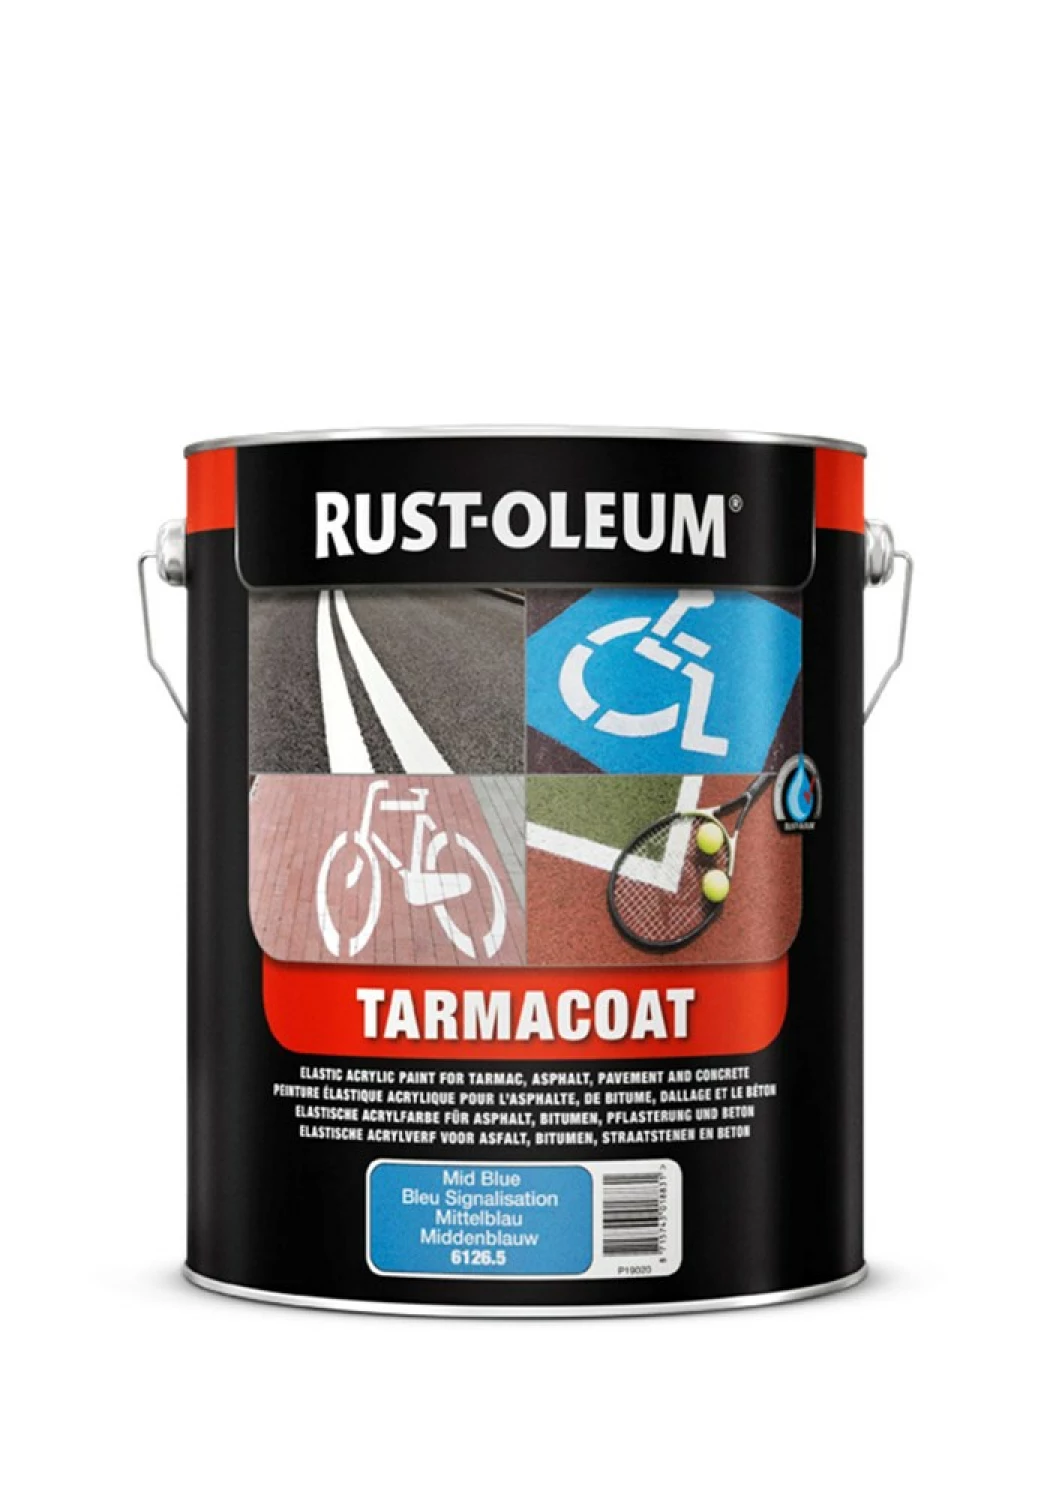 Rust-Oleum Tarmacoat Wegenverf - engelsrood - 5L